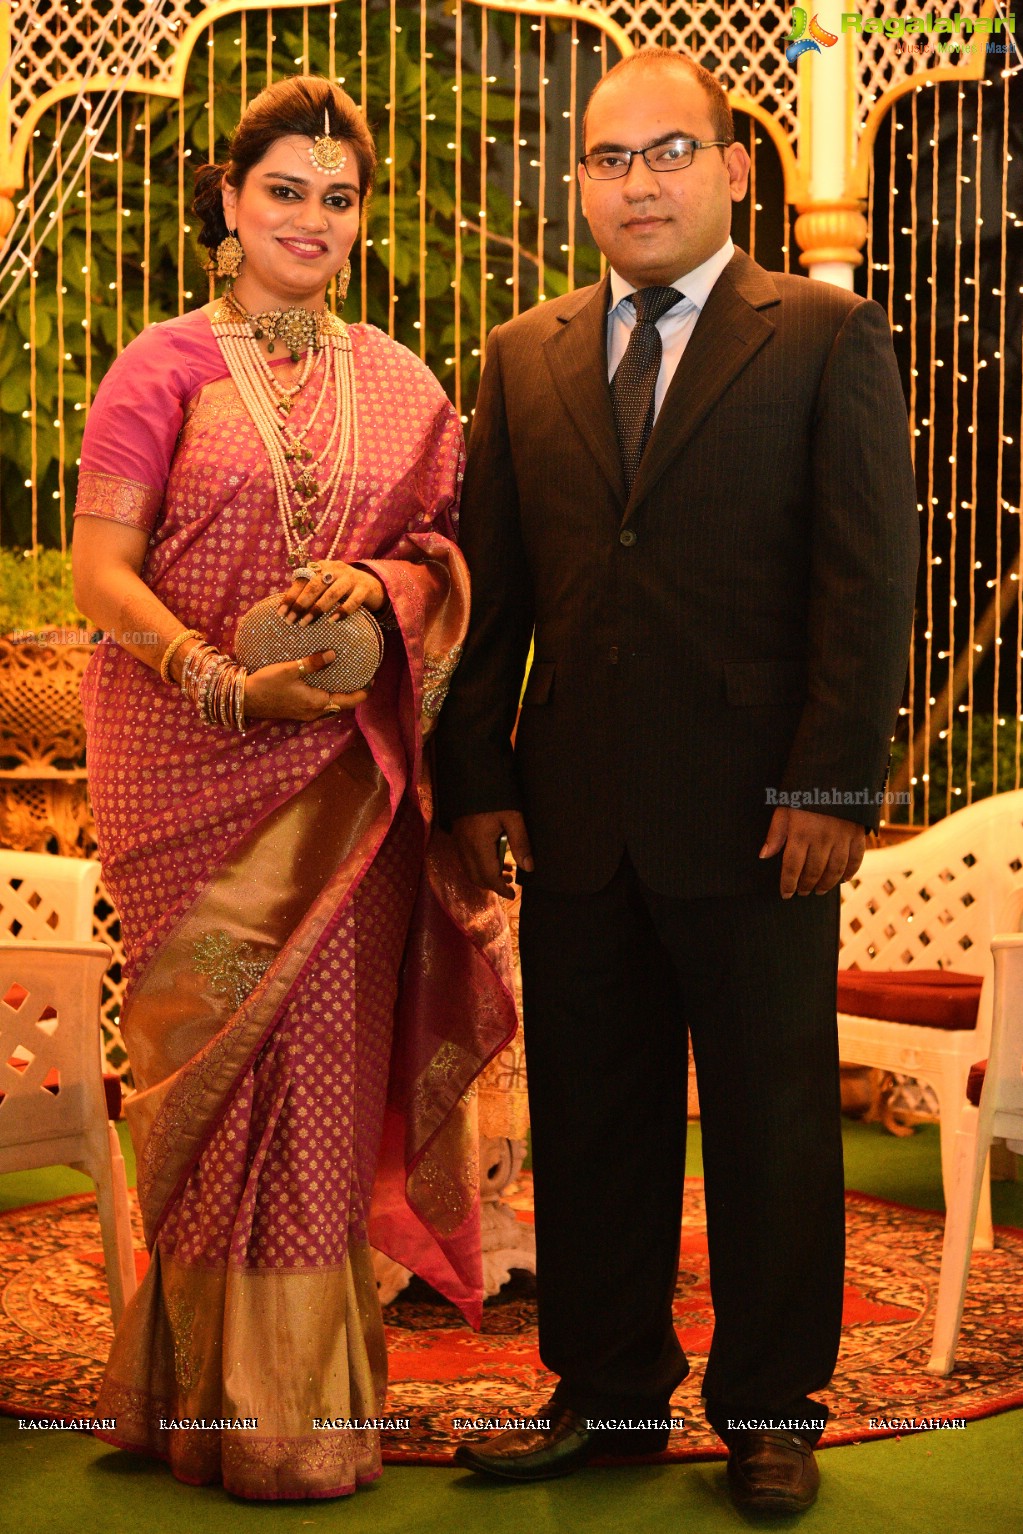 Maria and Dr Syed Mohd Faisal Mahmood. Reception at Paigah Gardens, Begumpet